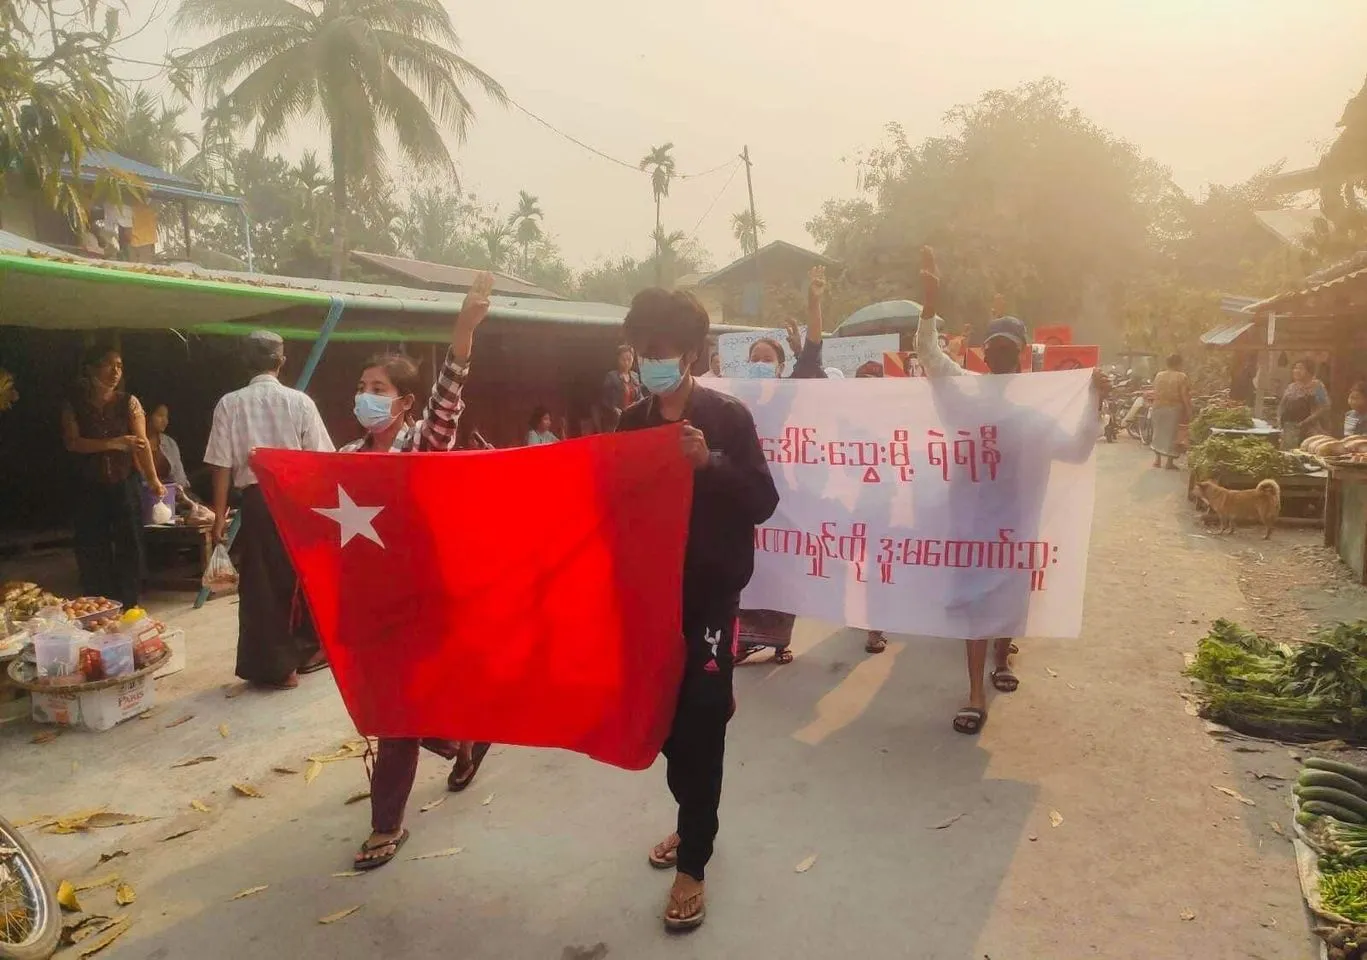 “ထောင်ထဲမှာတော့သေနေပြီ၊မင်းတို့တွေကသွေးအေးတုန်းလား” ကလေးမြို့ပင်မသပိတ်